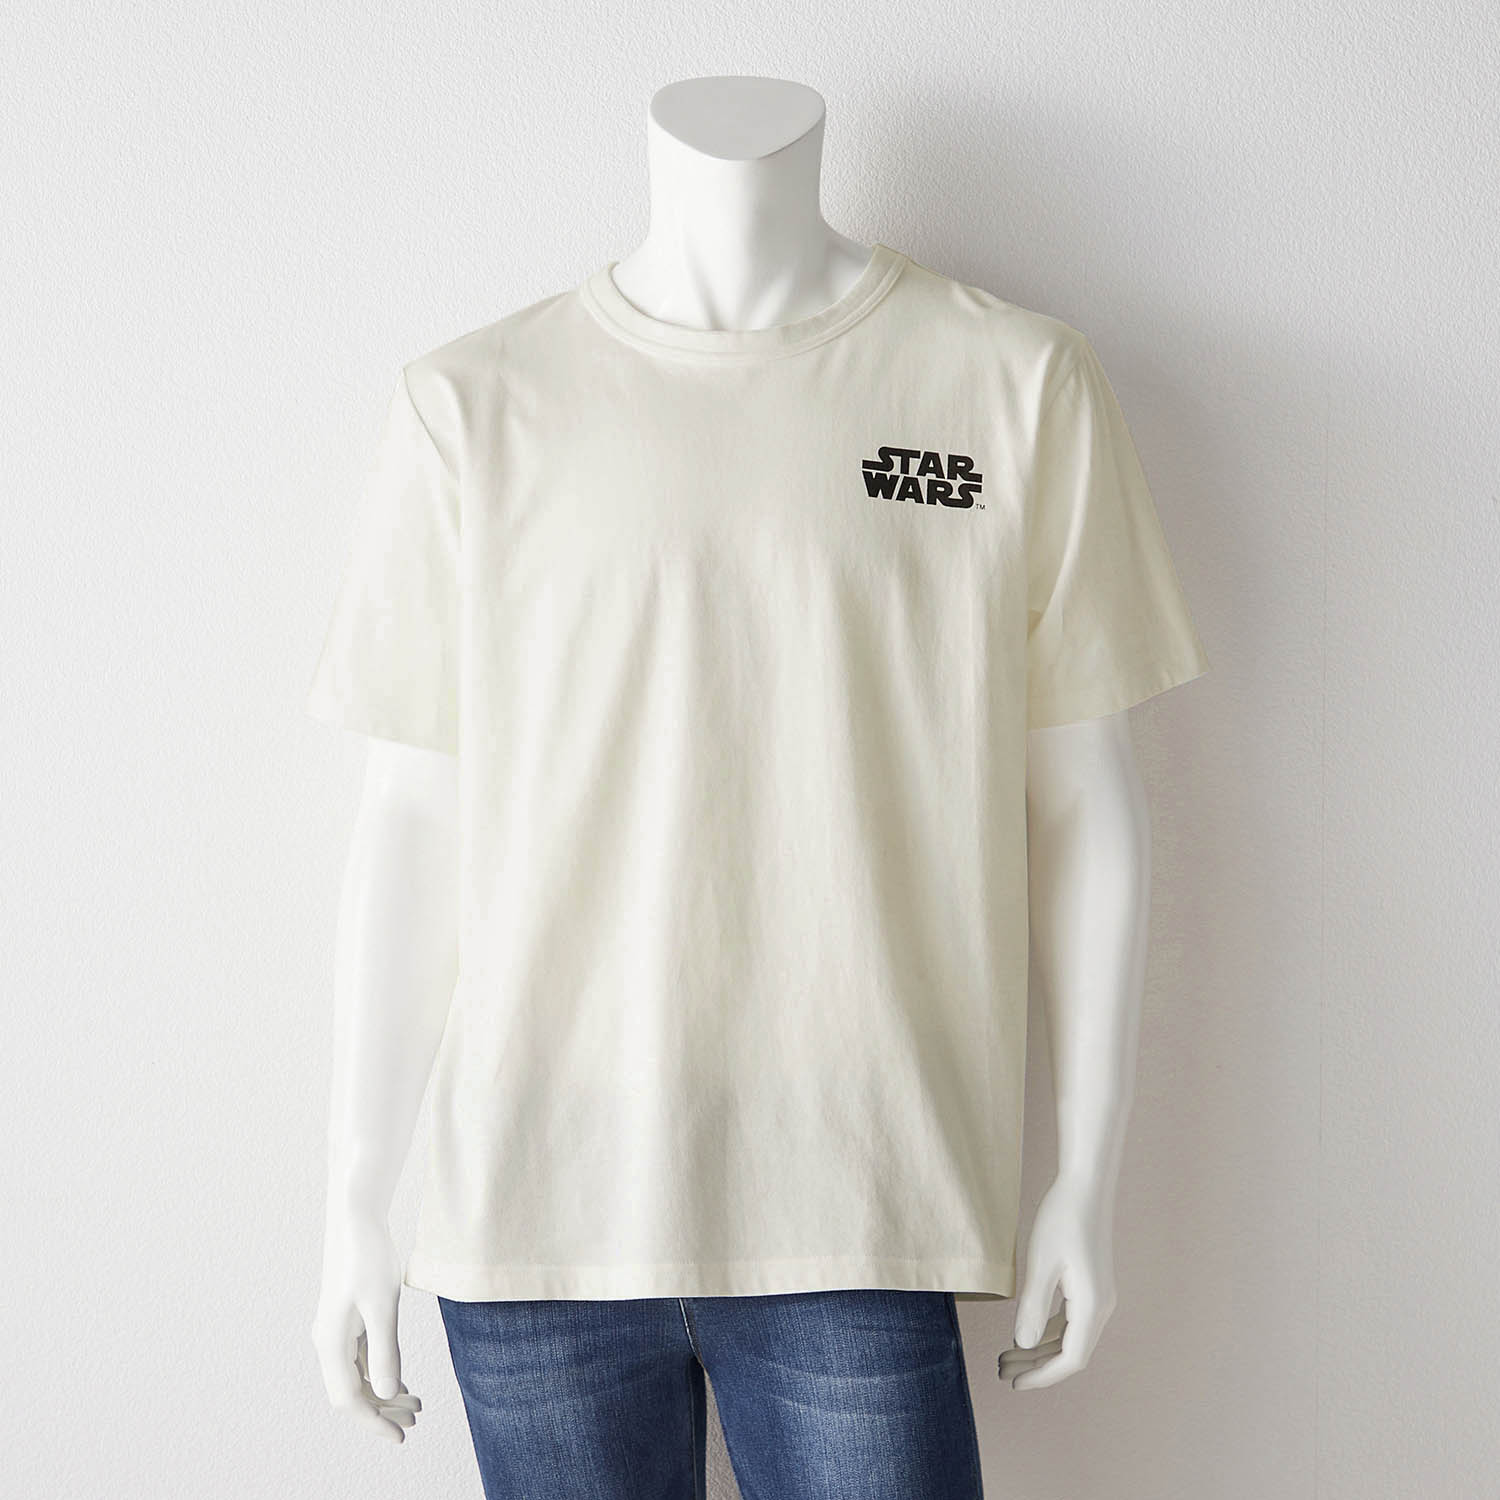 スターウォーズ tシャツのランキングTOP100 - 人気売れ筋ランキング 